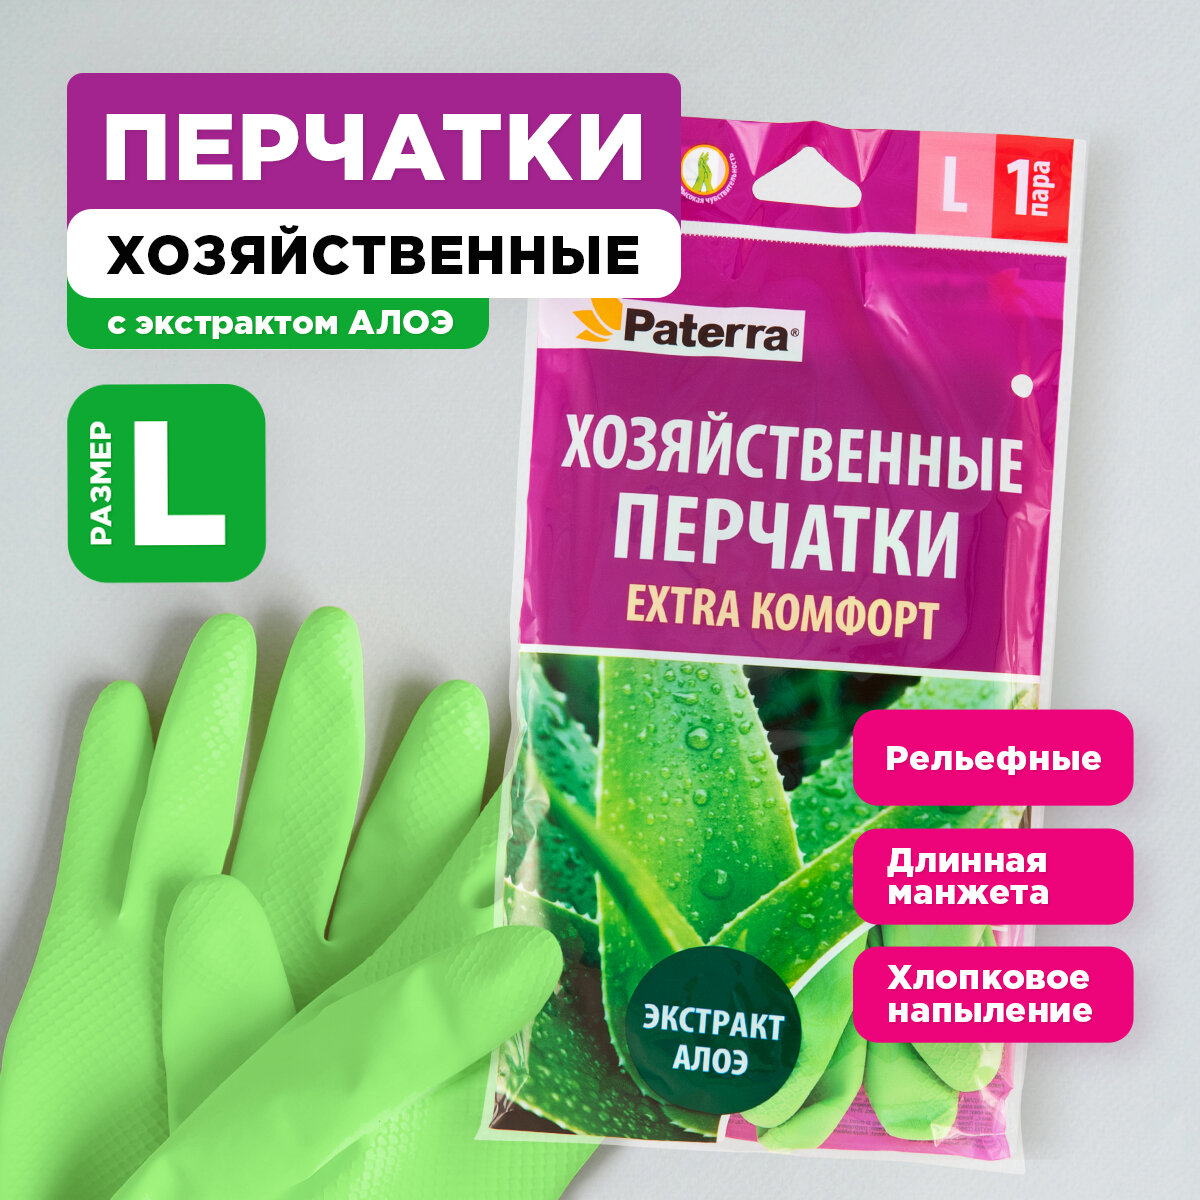 Перчатки резиновые EXTRA komфорт, PATERRA, р-р L (402-417)